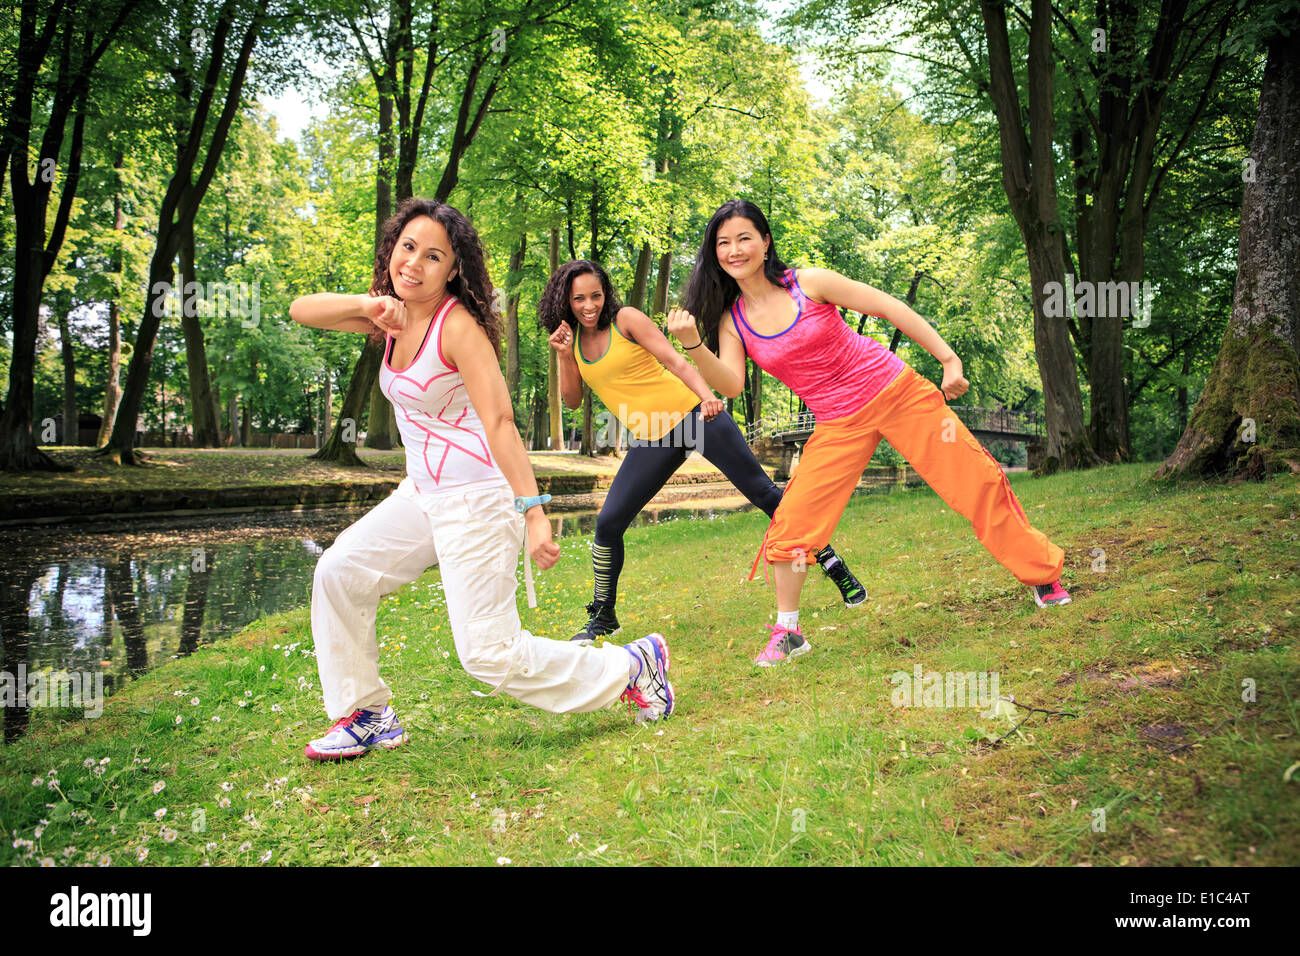 Grupo de mujeres bailando zumba dance fitness o aeróbic en un antiguo parque Foto de stock